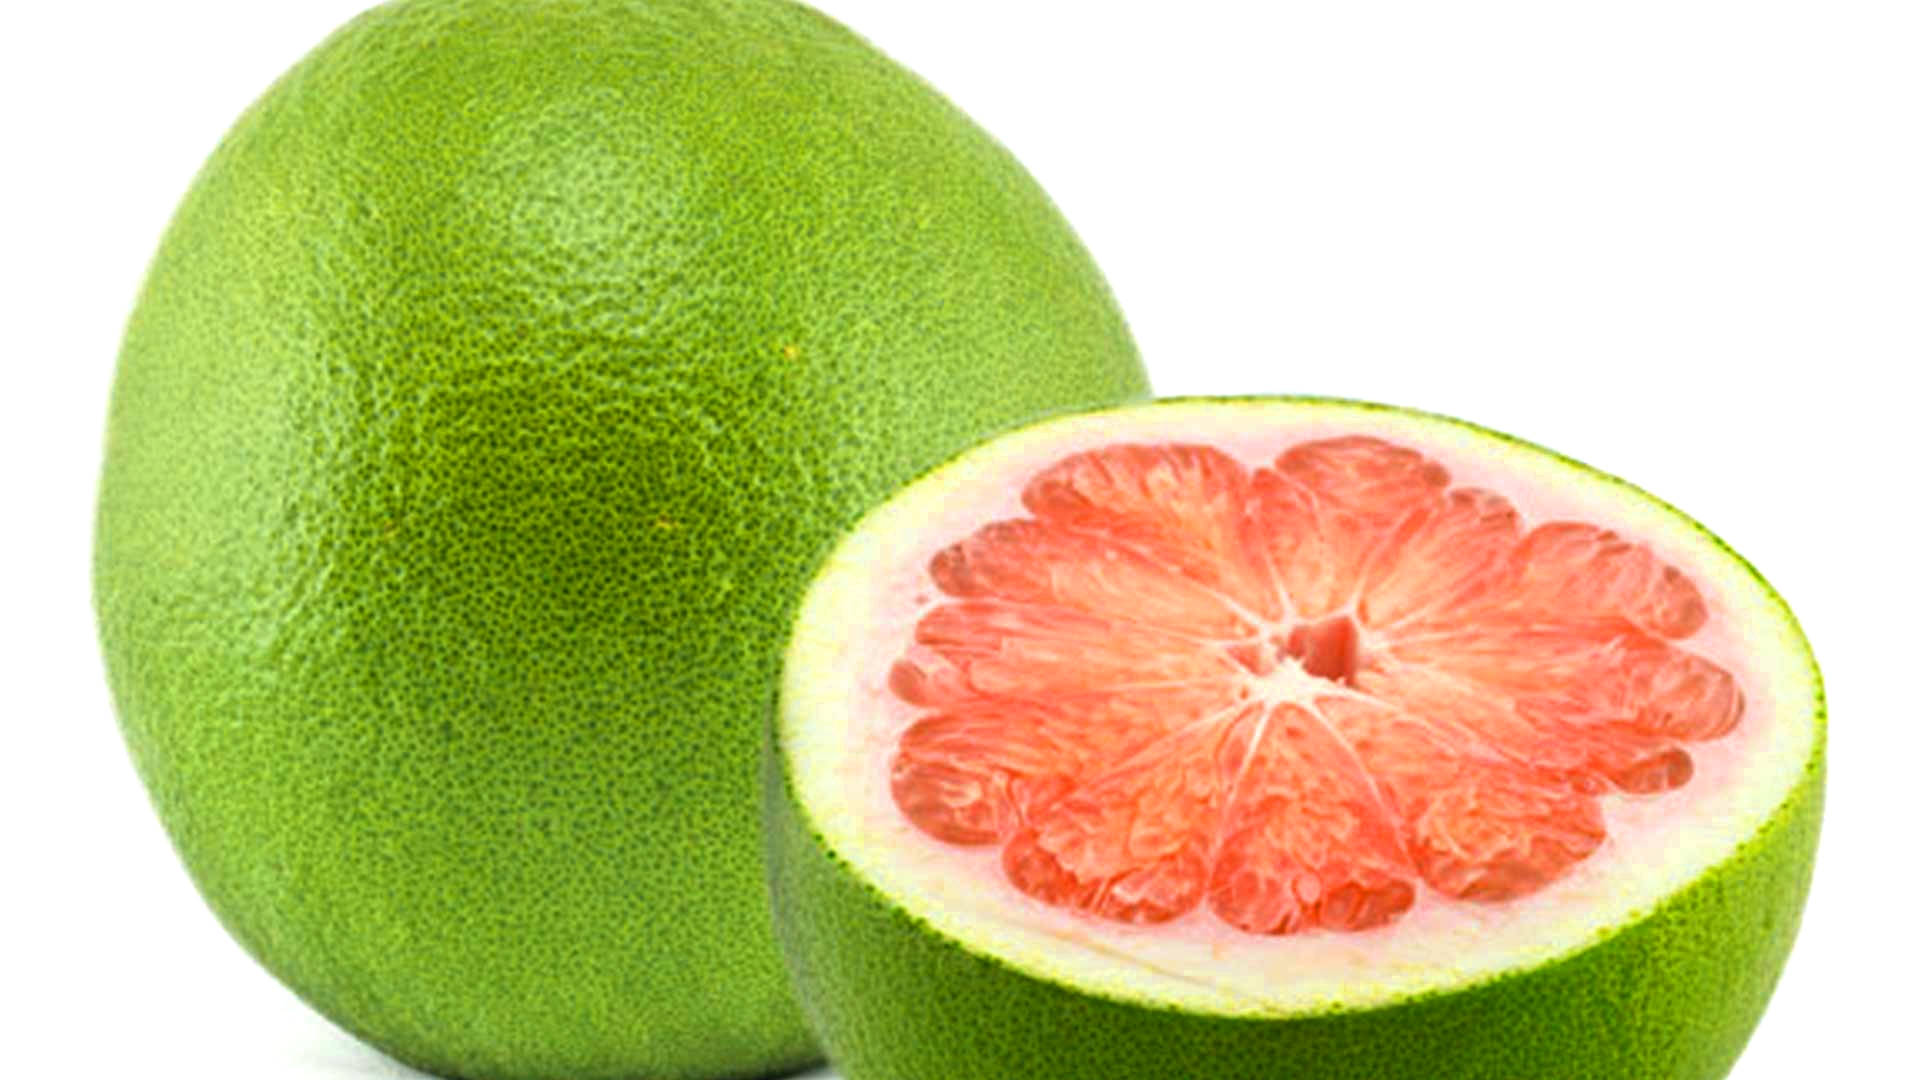 绿皮柚子。图自互联网